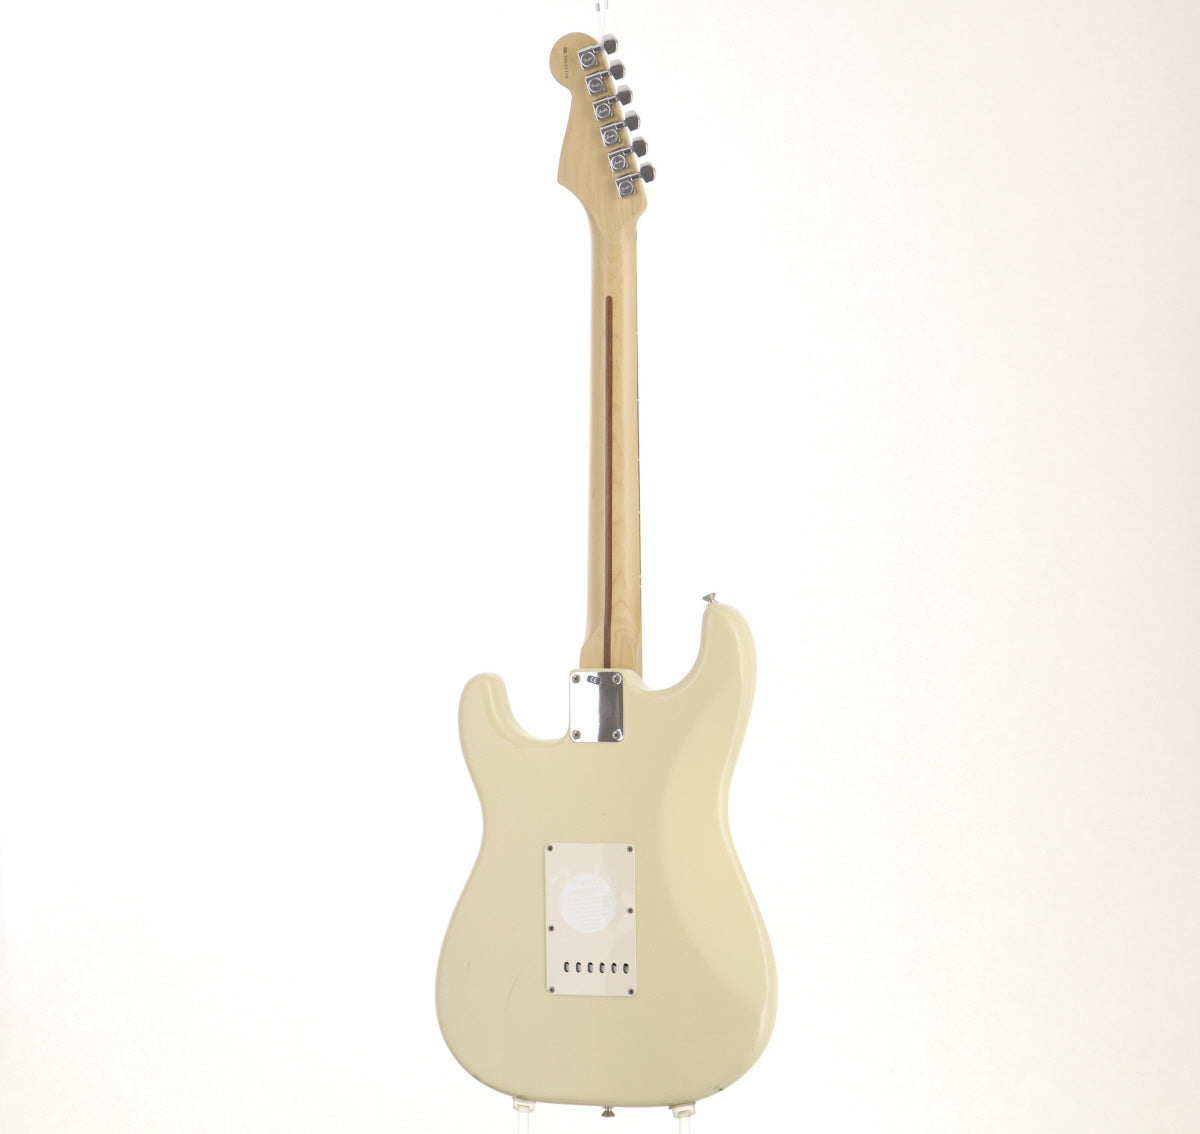 [SN Z4026216] USED Fender / Highway 1 Stratocaster Honey Blonde [06]